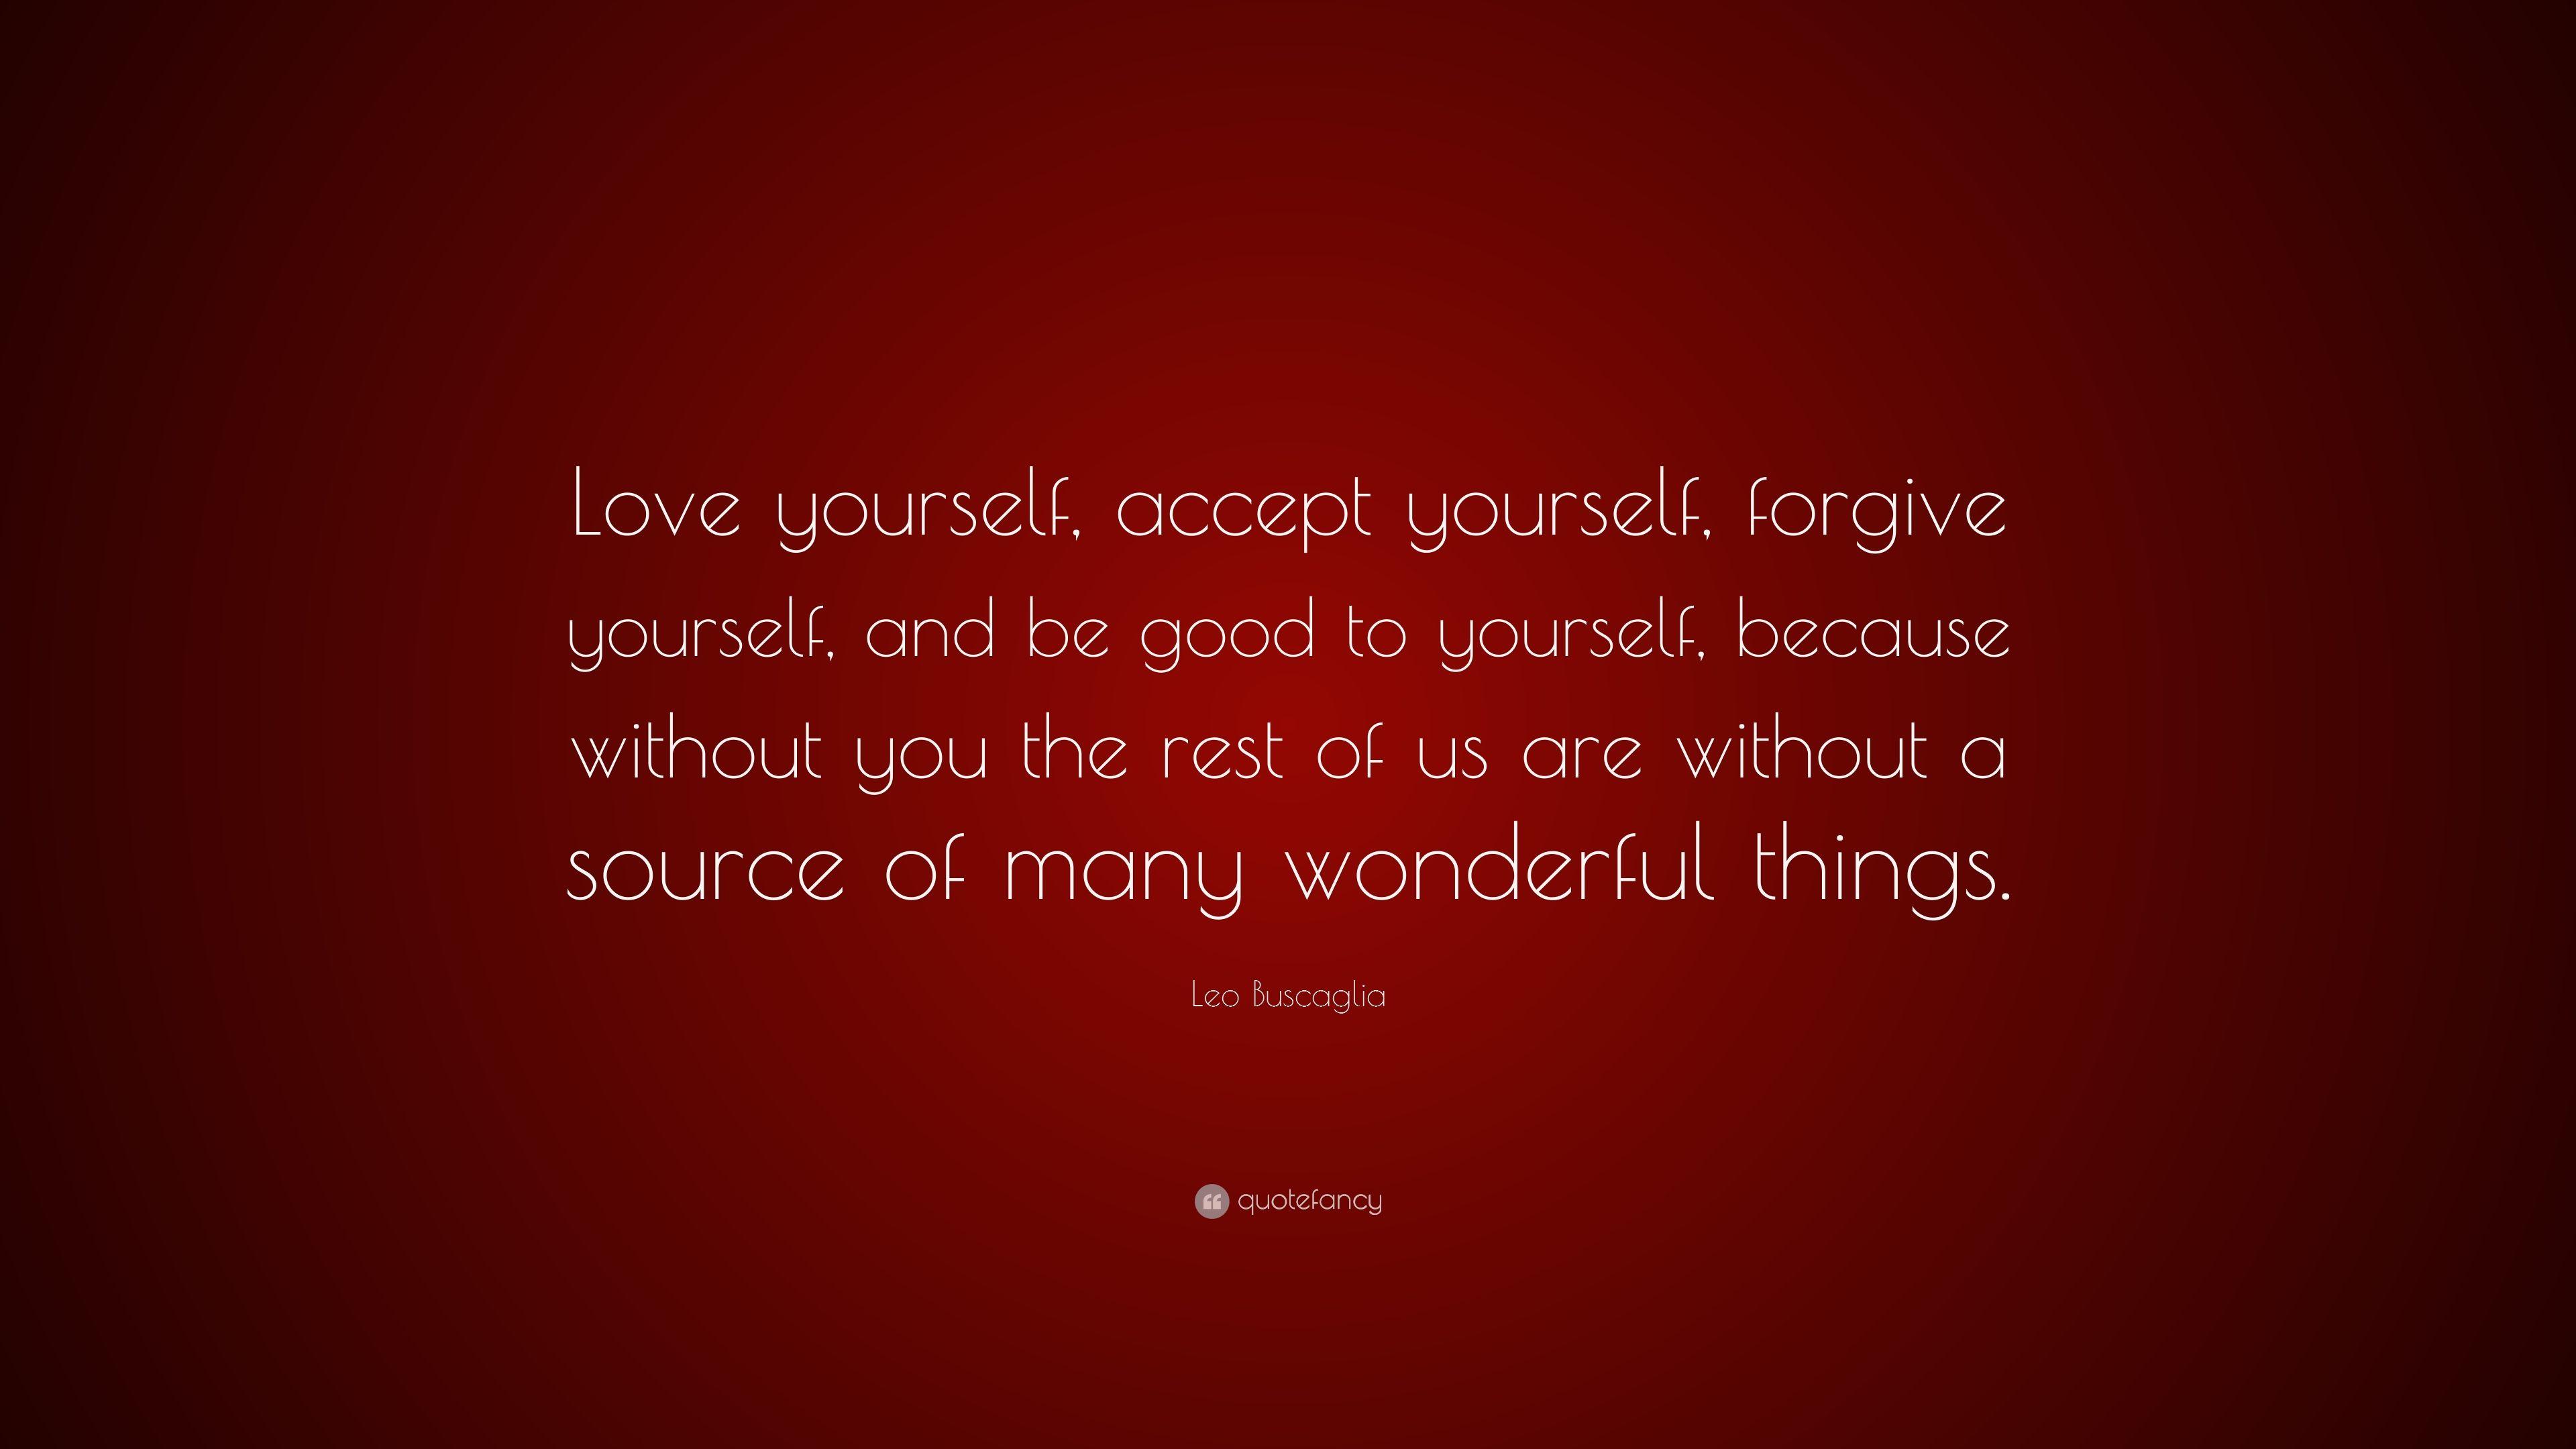 Leo Buscaglia Quote: “Love yourself, accept yourself, forgive